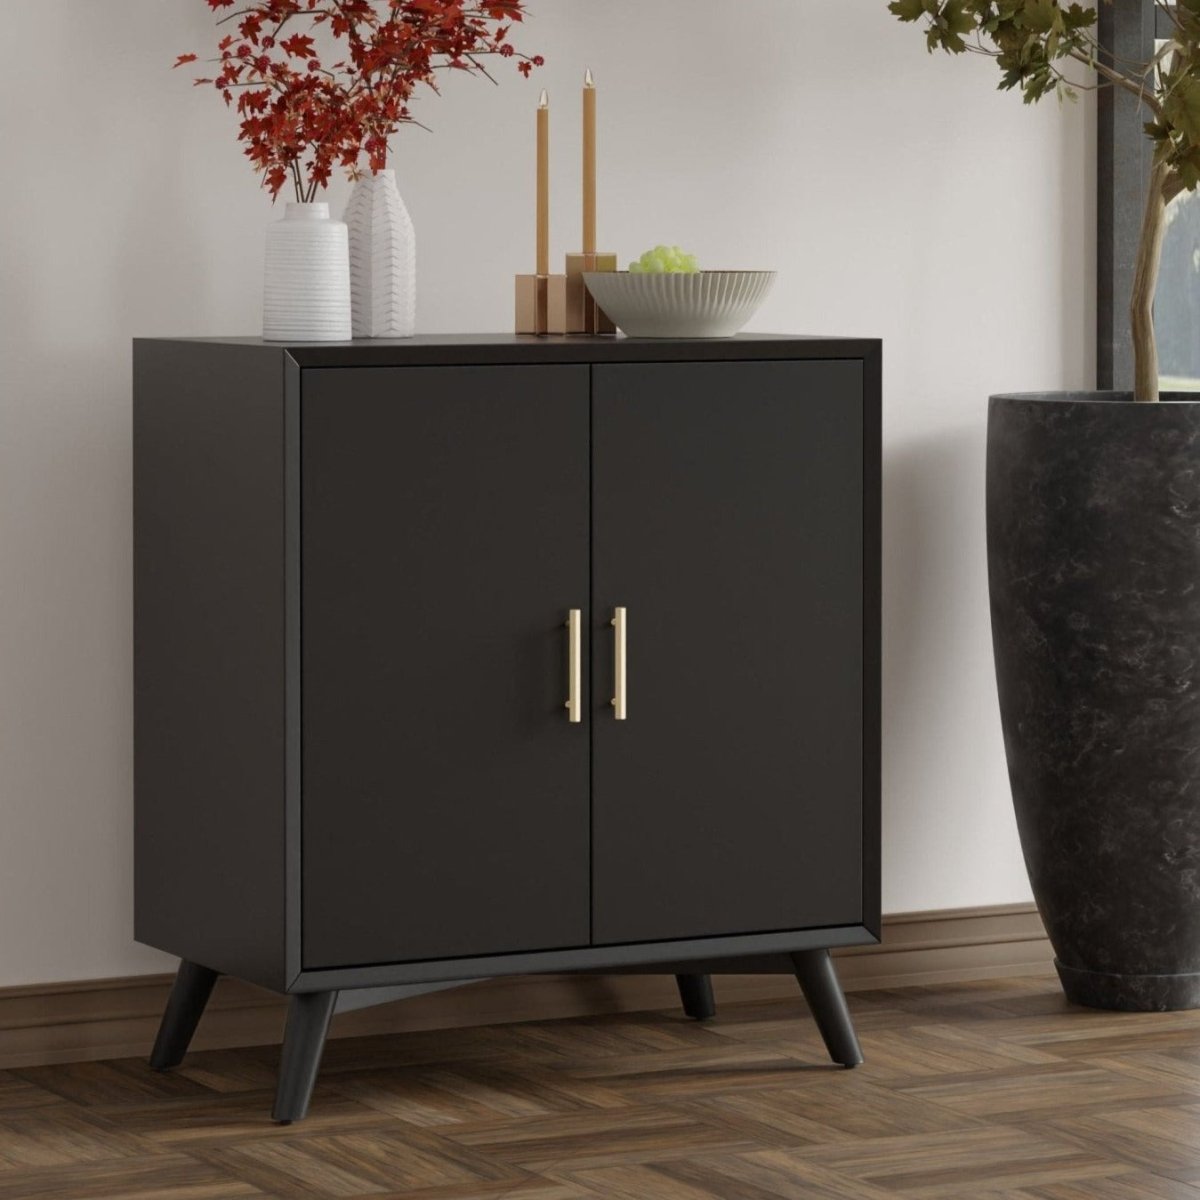 Alpine Furniture Flynn Small Bar Cabinet, Black - lily & onyx